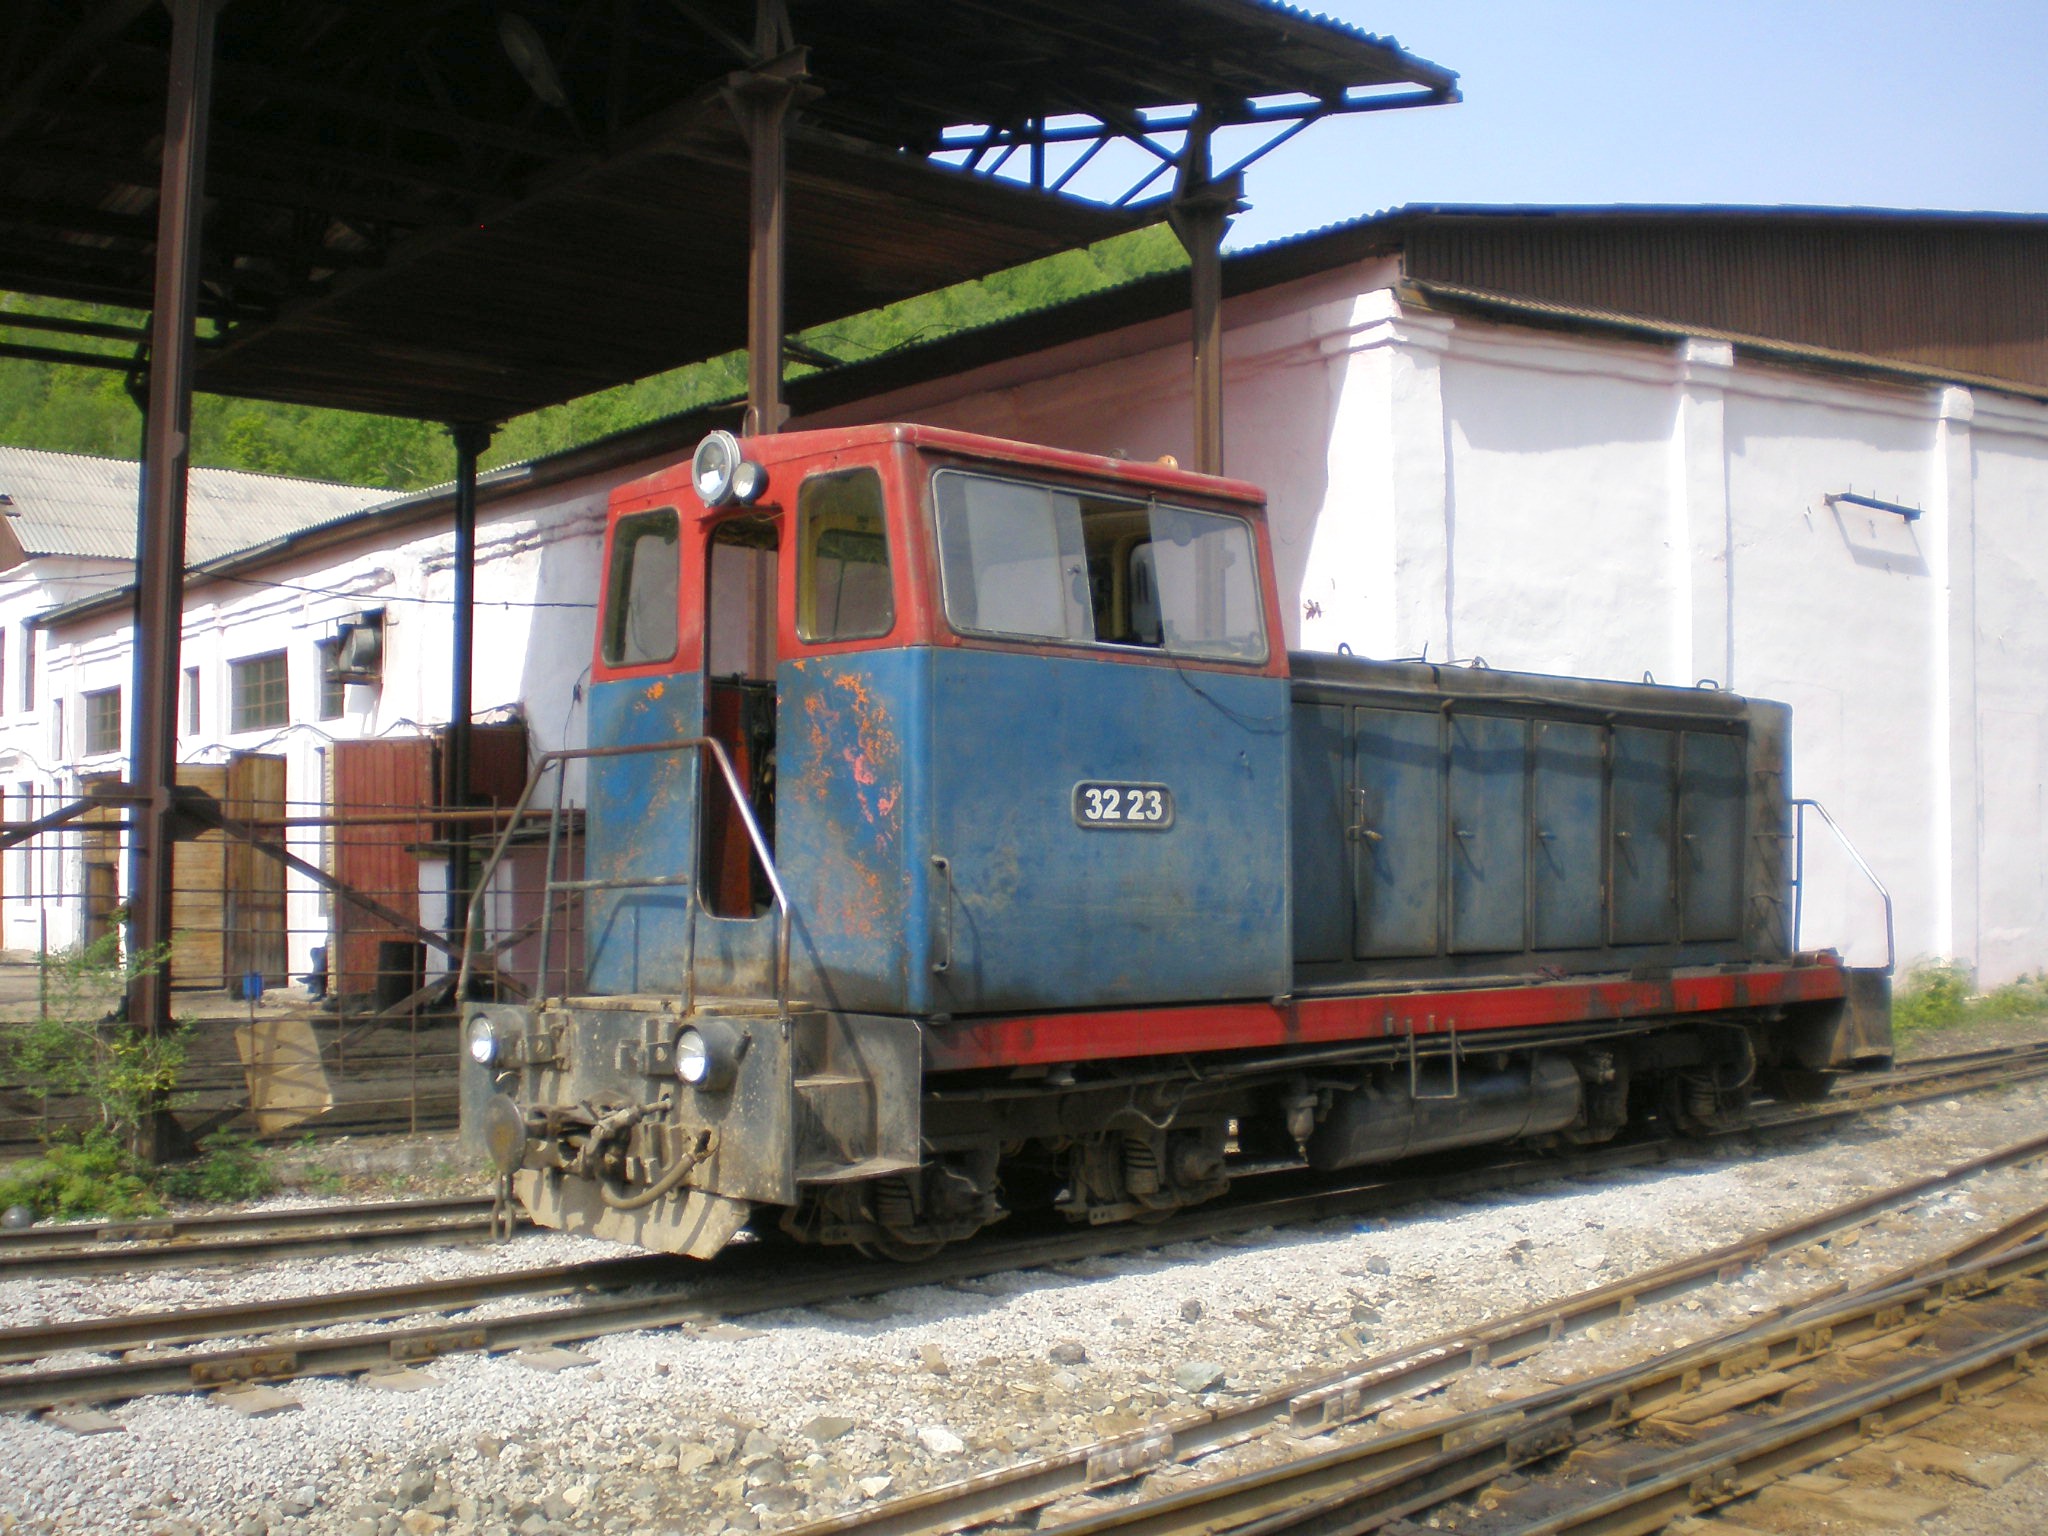 Тетюхинская узкоколейная железная дорога  —  фотографии, сделанные в 2008 году (часть 15)